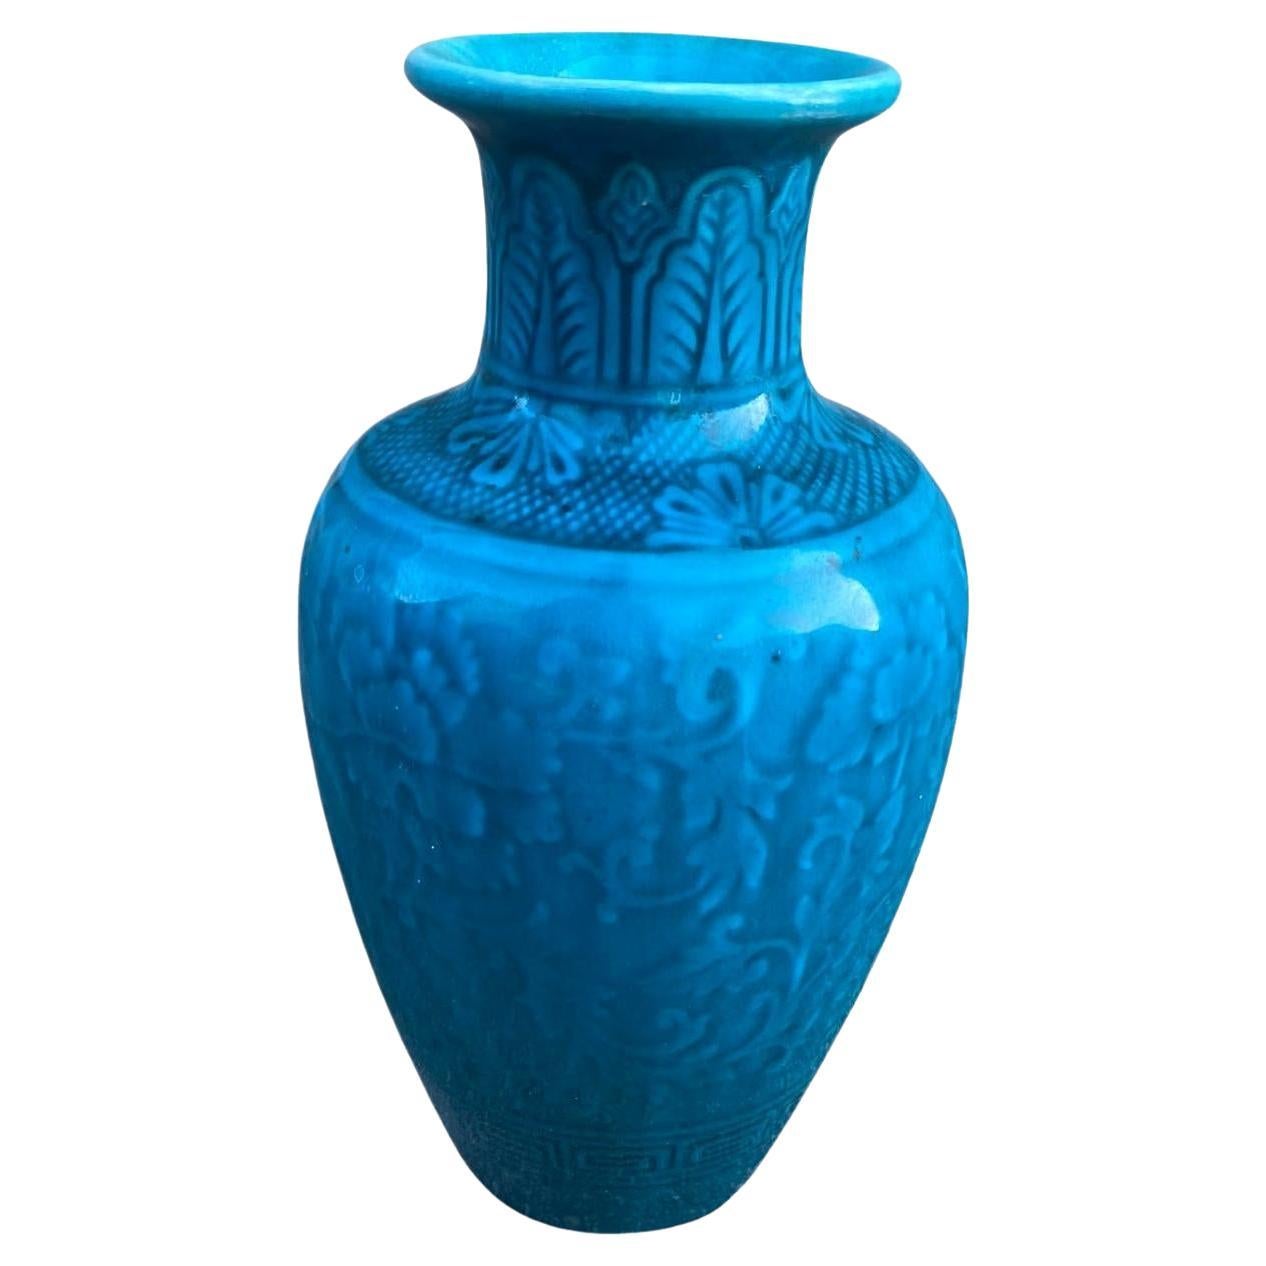 Théodore Deck, Vase en céramique, signé, vers 1870